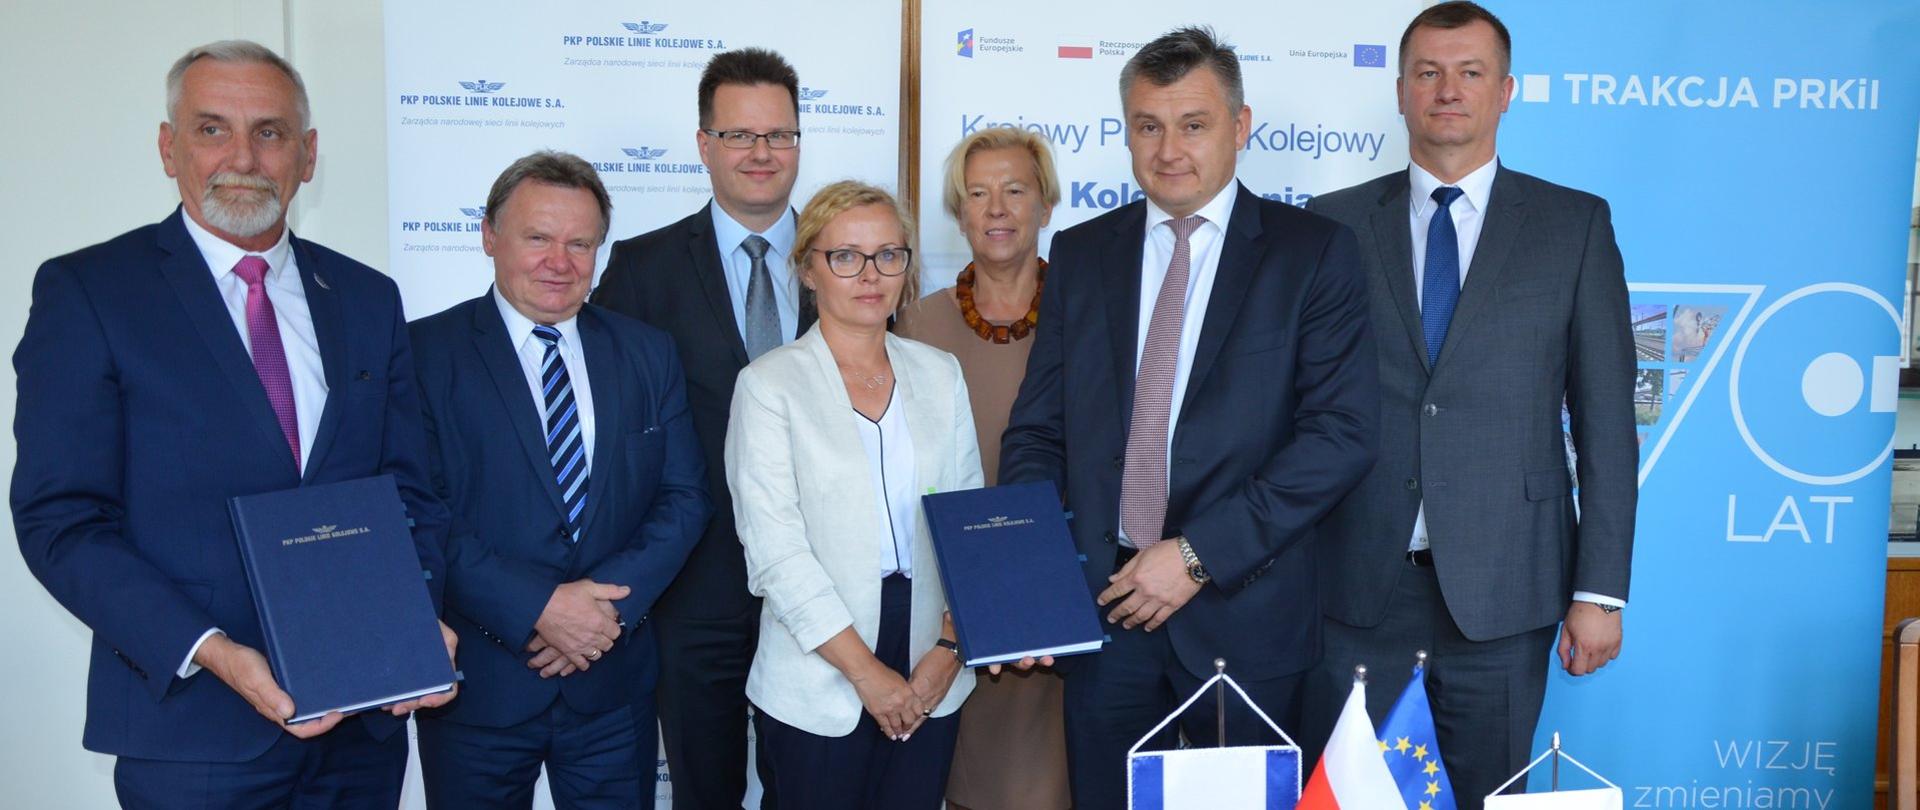 Wiceminister infrastruktury A. Bittel uczestniczył w podpisaniu umowy na modernizację trasy E59 między Stargardem a Szczecinem Dąbiem.